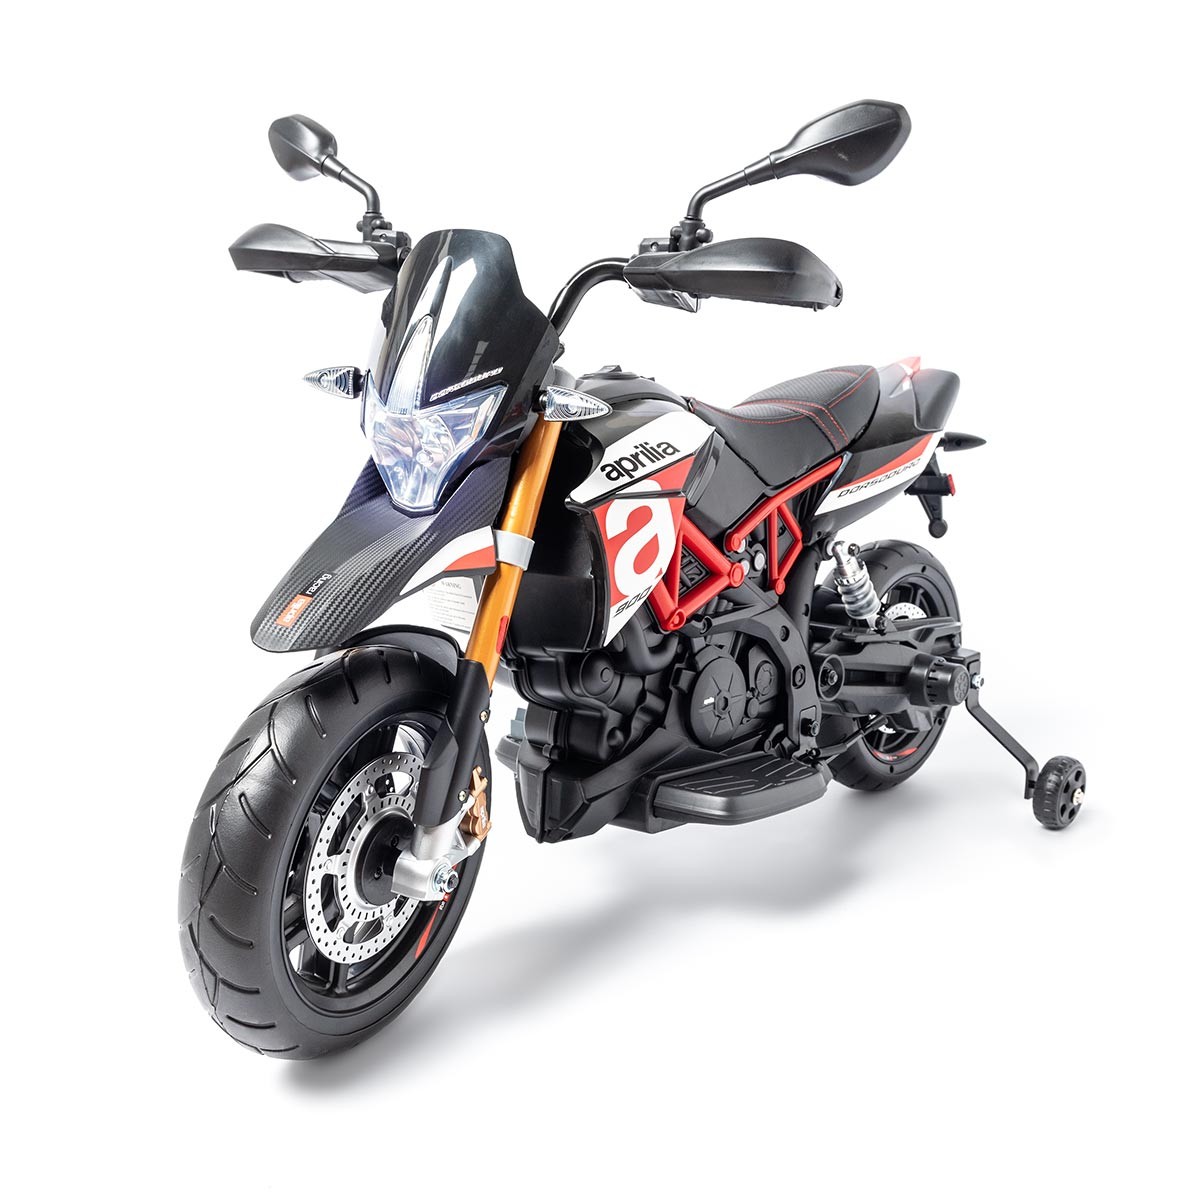 Moto de melhor qualidade para crianças com motos elétricas, motos